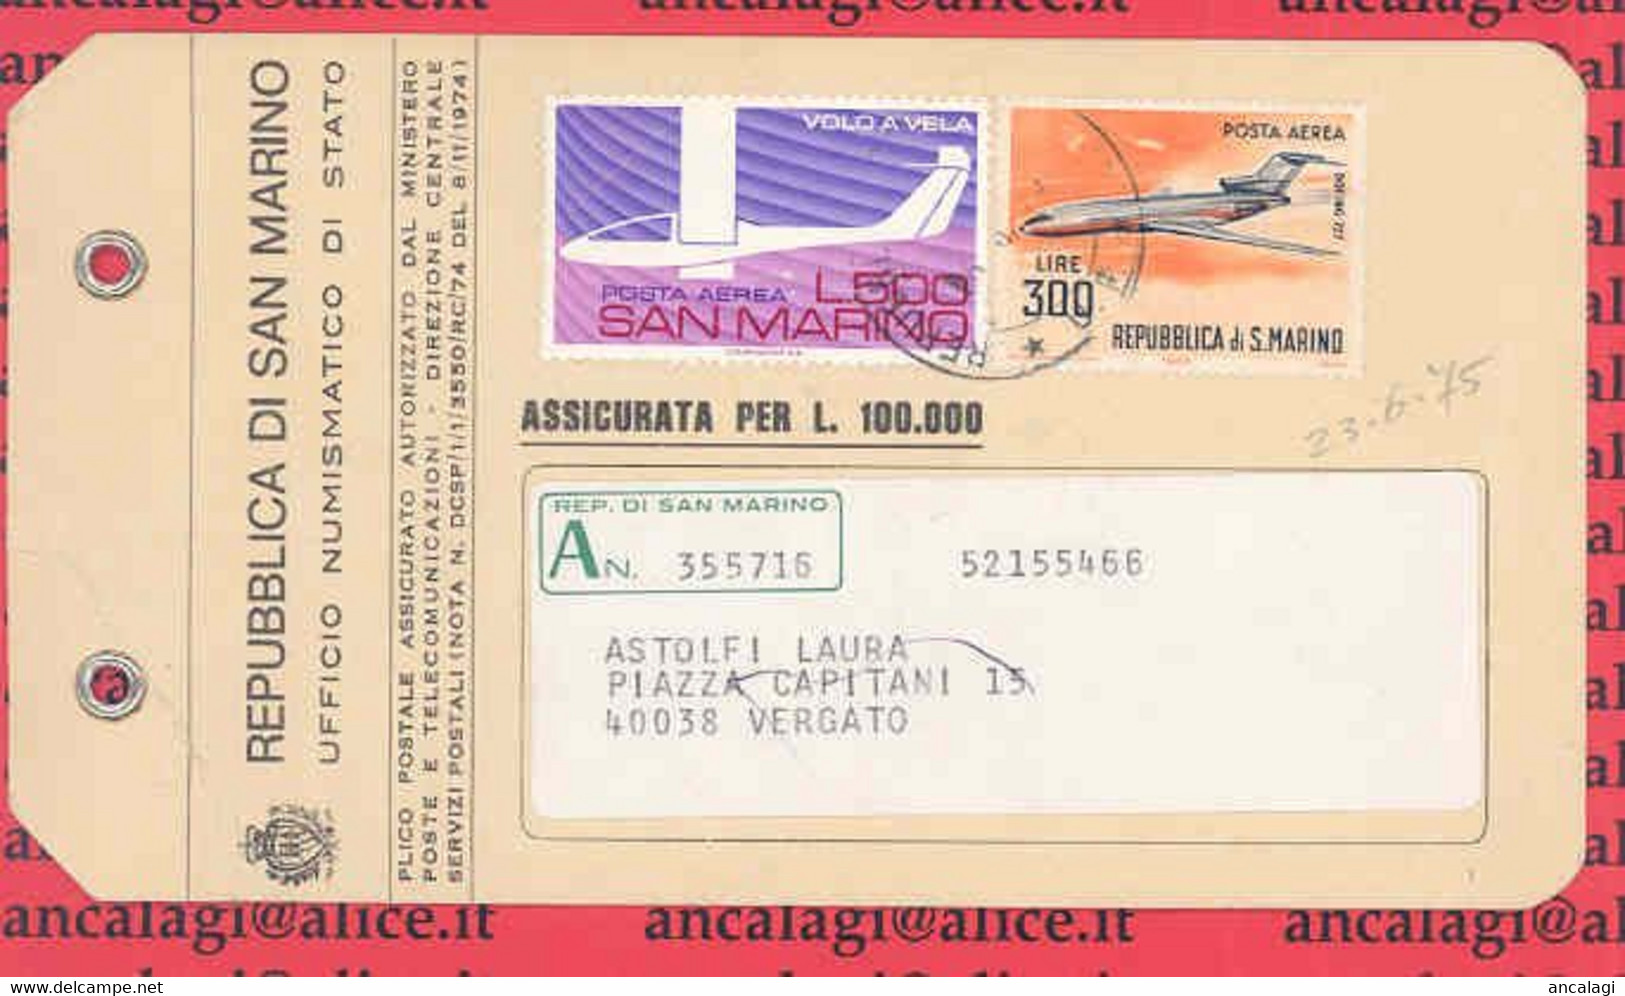 SAN MARINO 1975 - St.Post.052 - Targhetta Di Plico Postale Assicurato "VOLO A VELA" Posta Aerea - Vedi Descrizione - - Covers & Documents